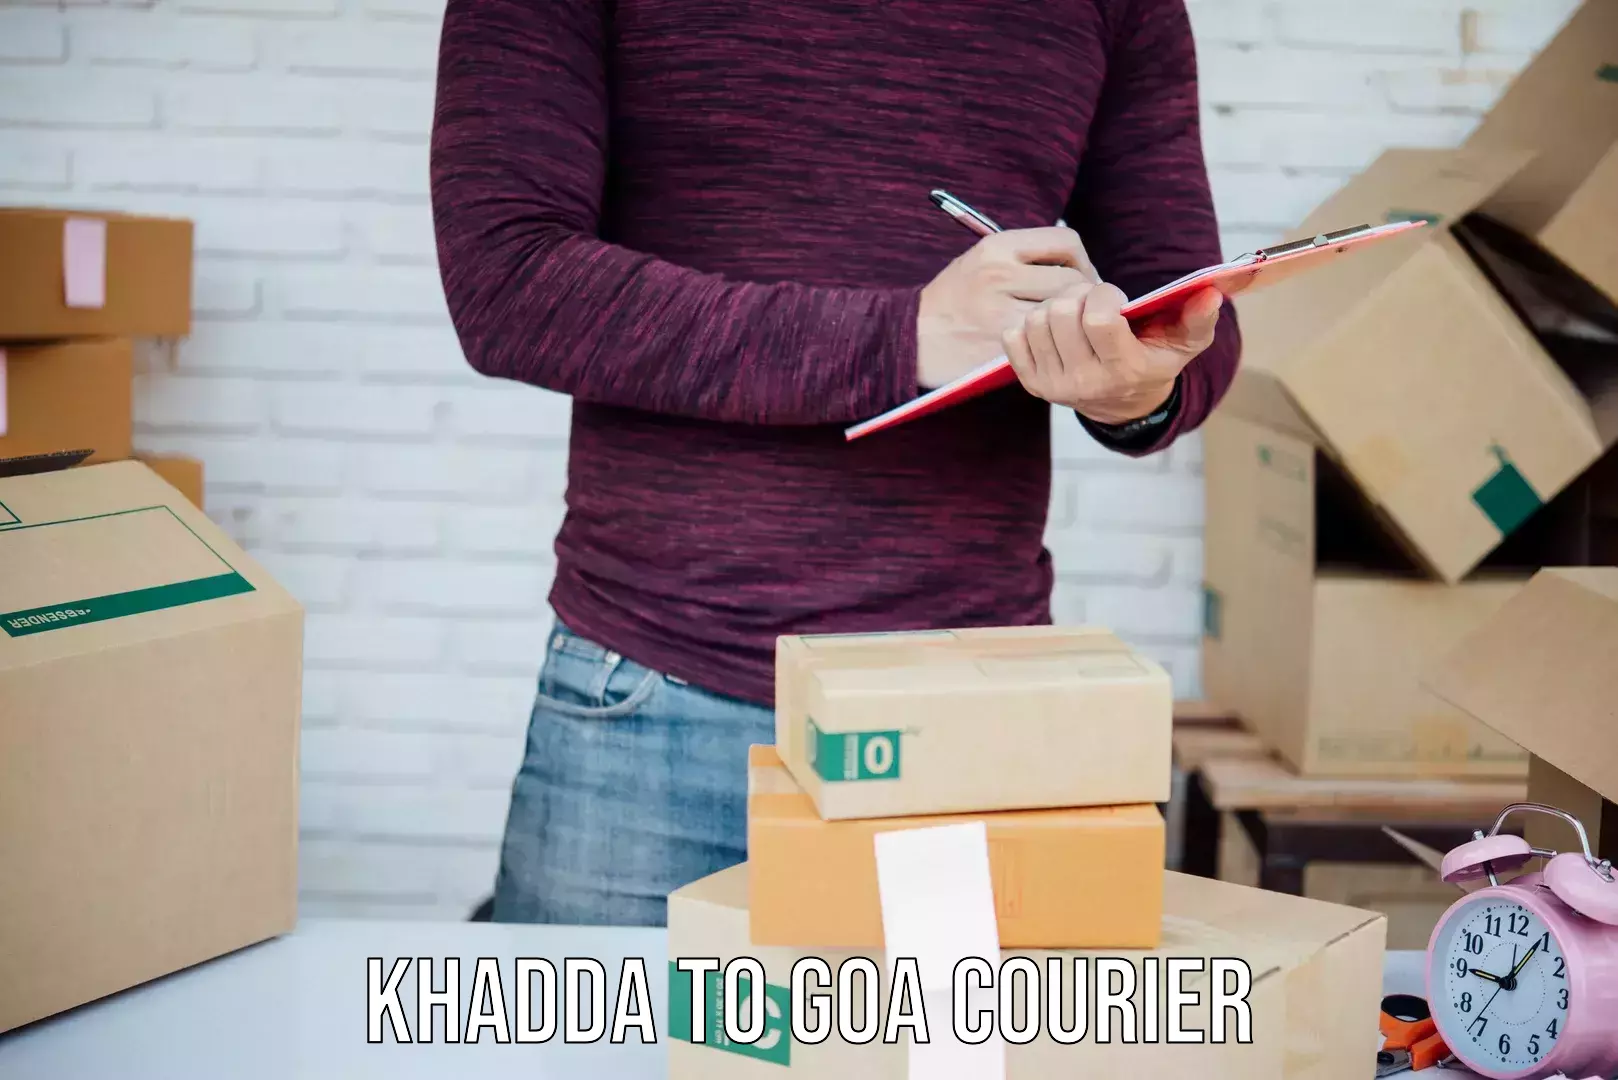 Door-to-door shipment Khadda to Ponda